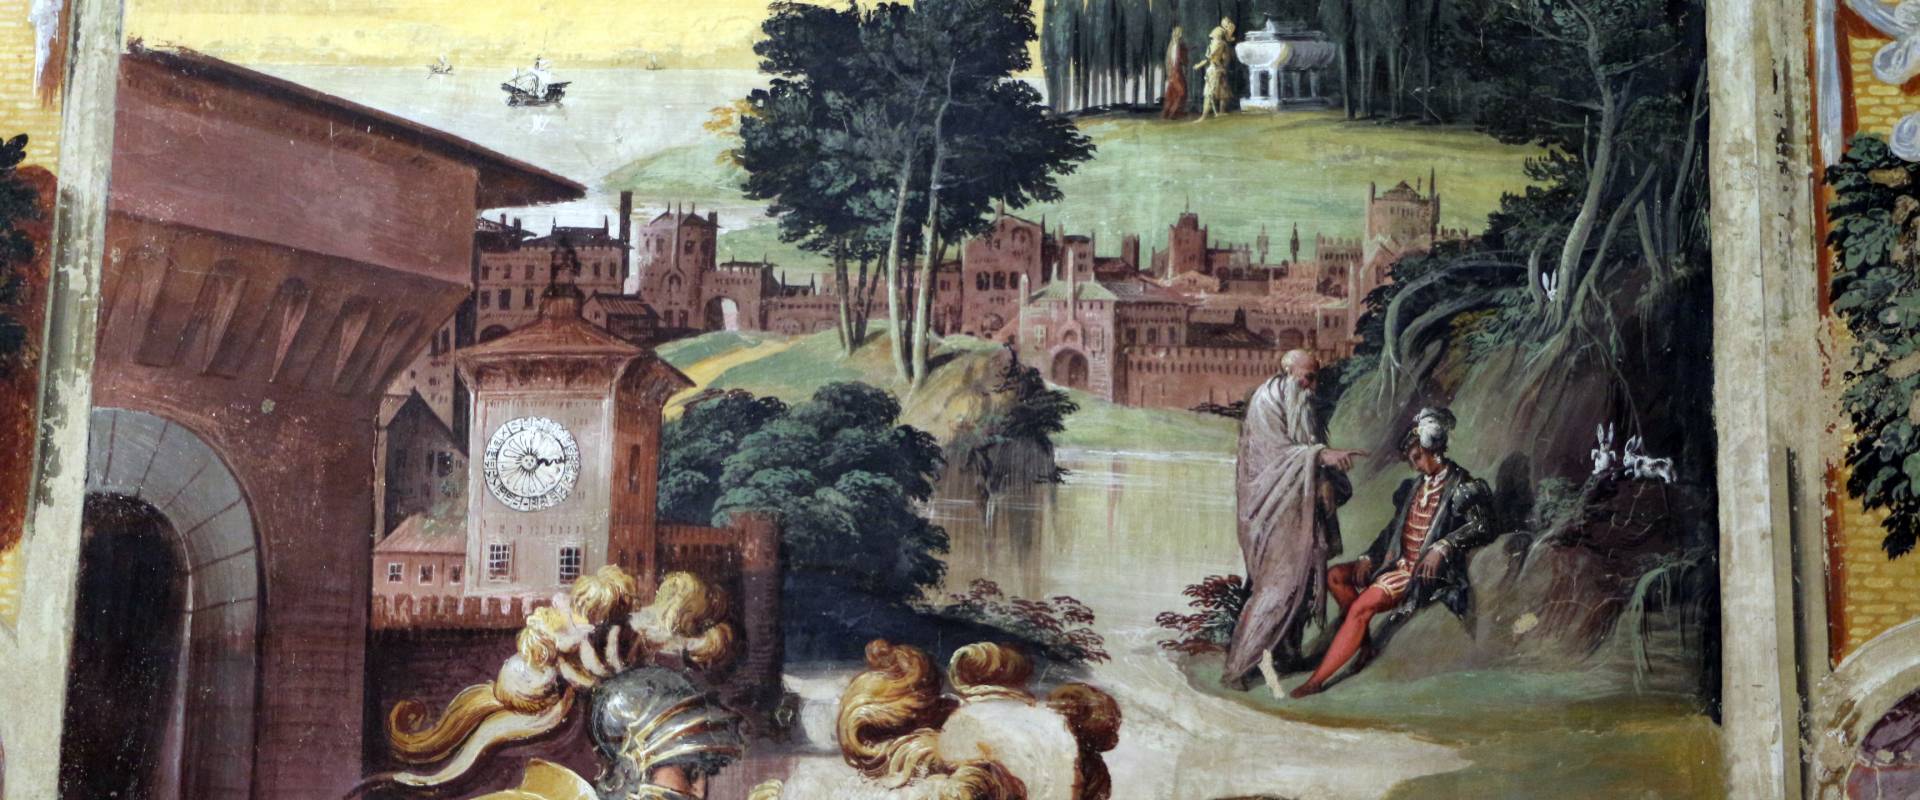 Niccolò dell'abate, affreschi dell'orlando furioso, da palazzo torfanini 05 ruggero fugge dal castello di alcina 2 foto di Sailko